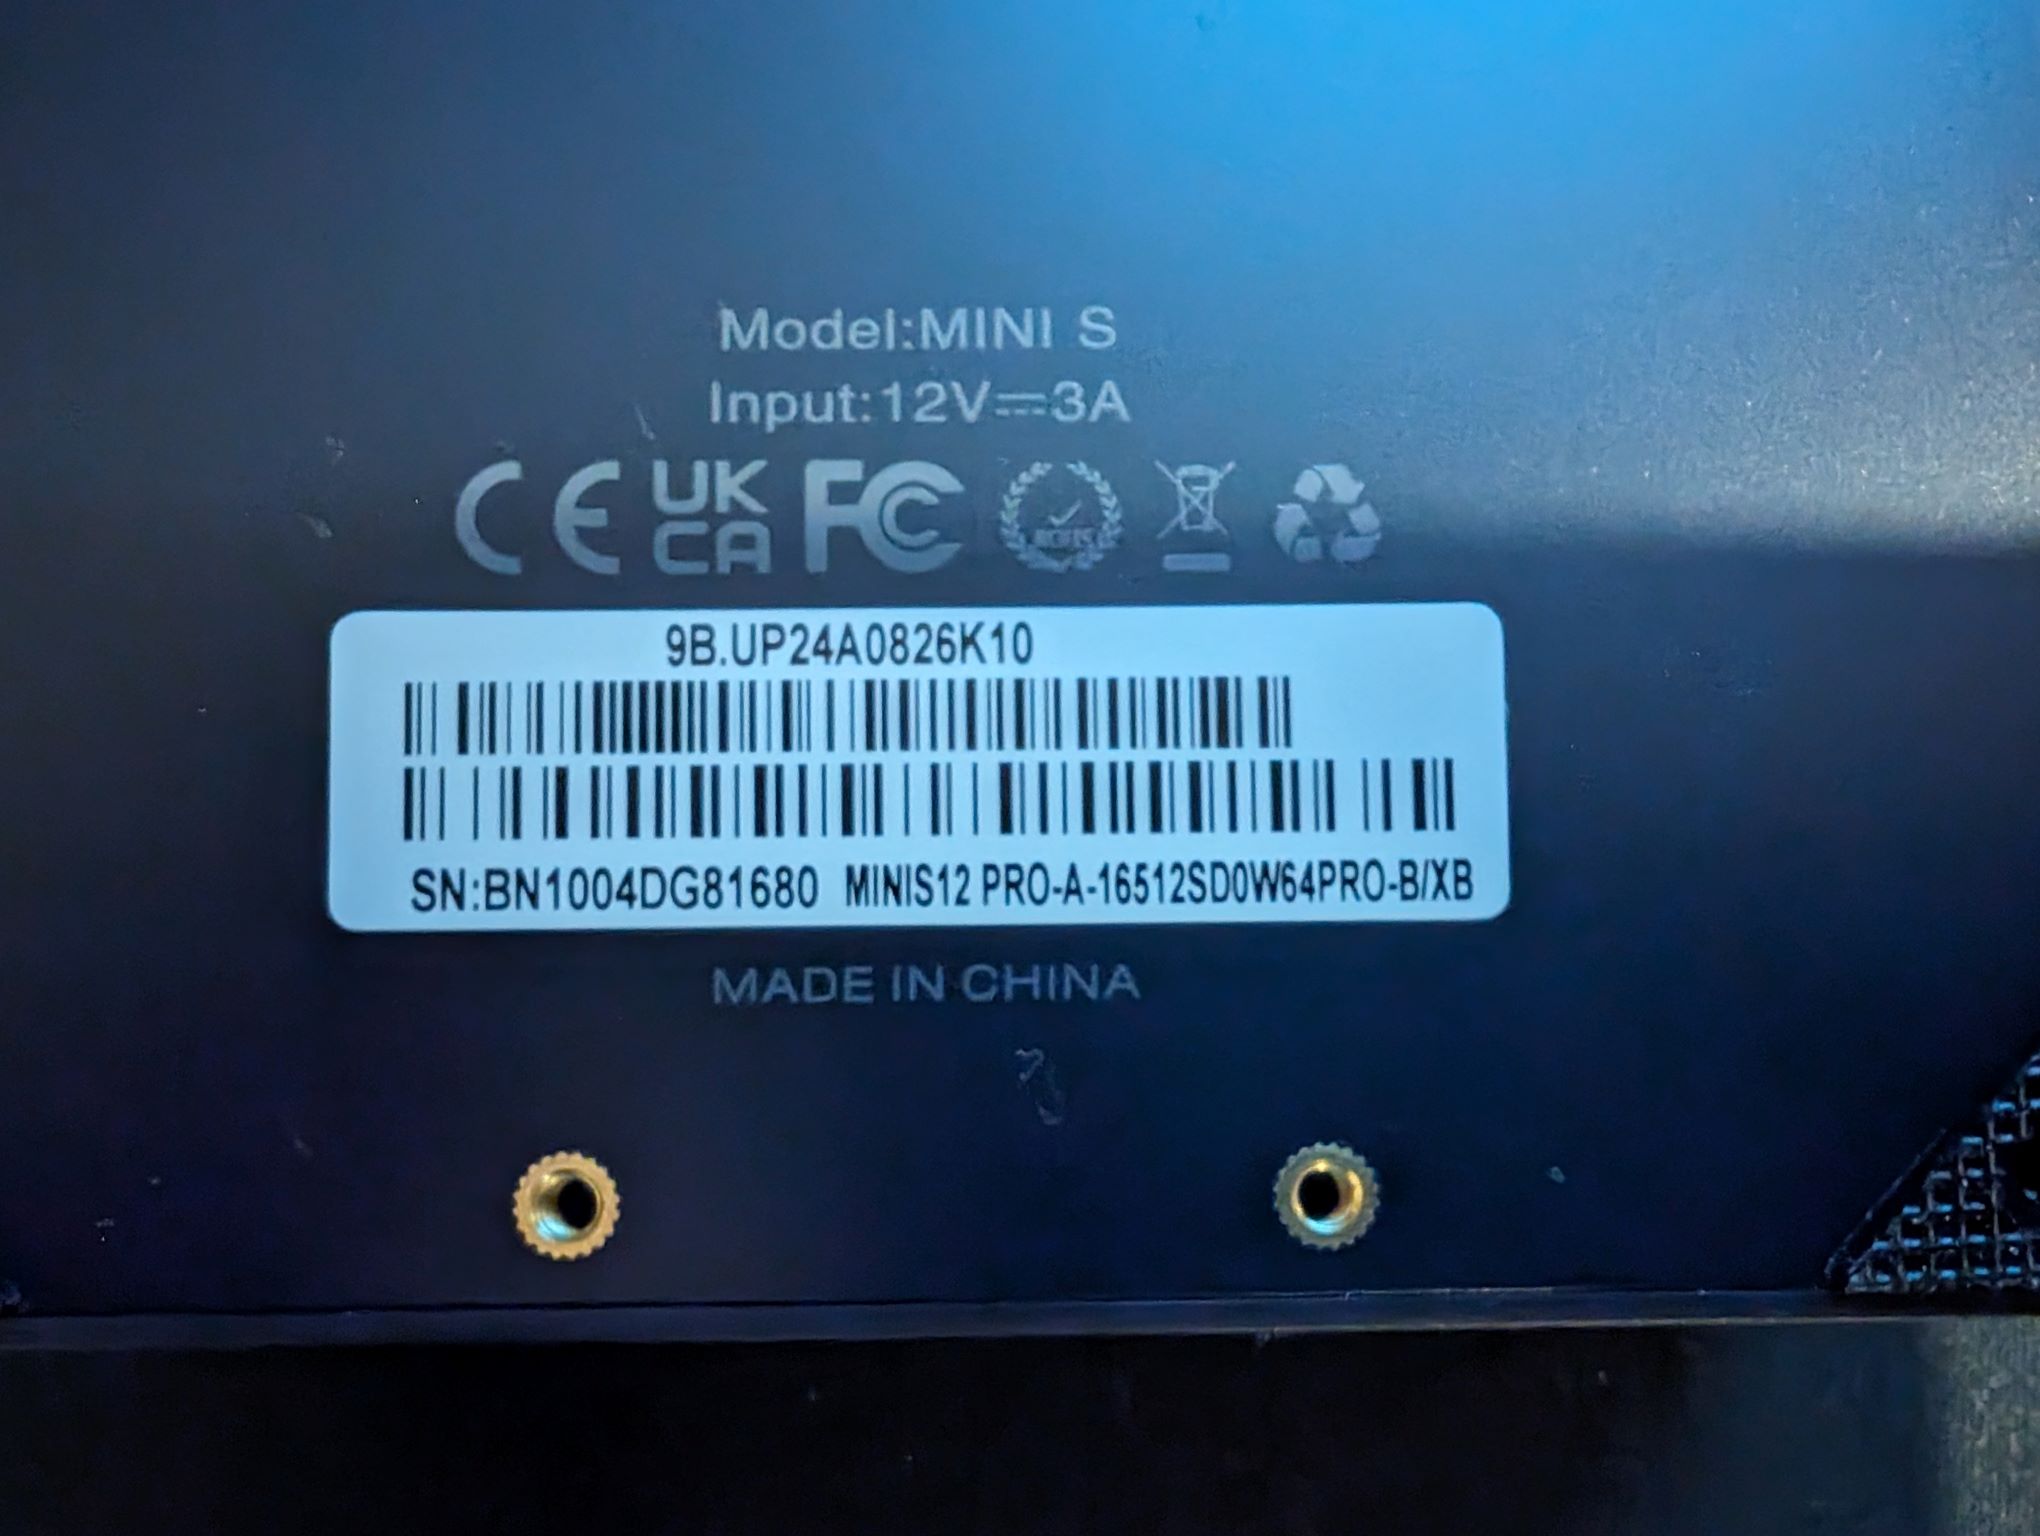 Mini S 12 Pro W11 Key